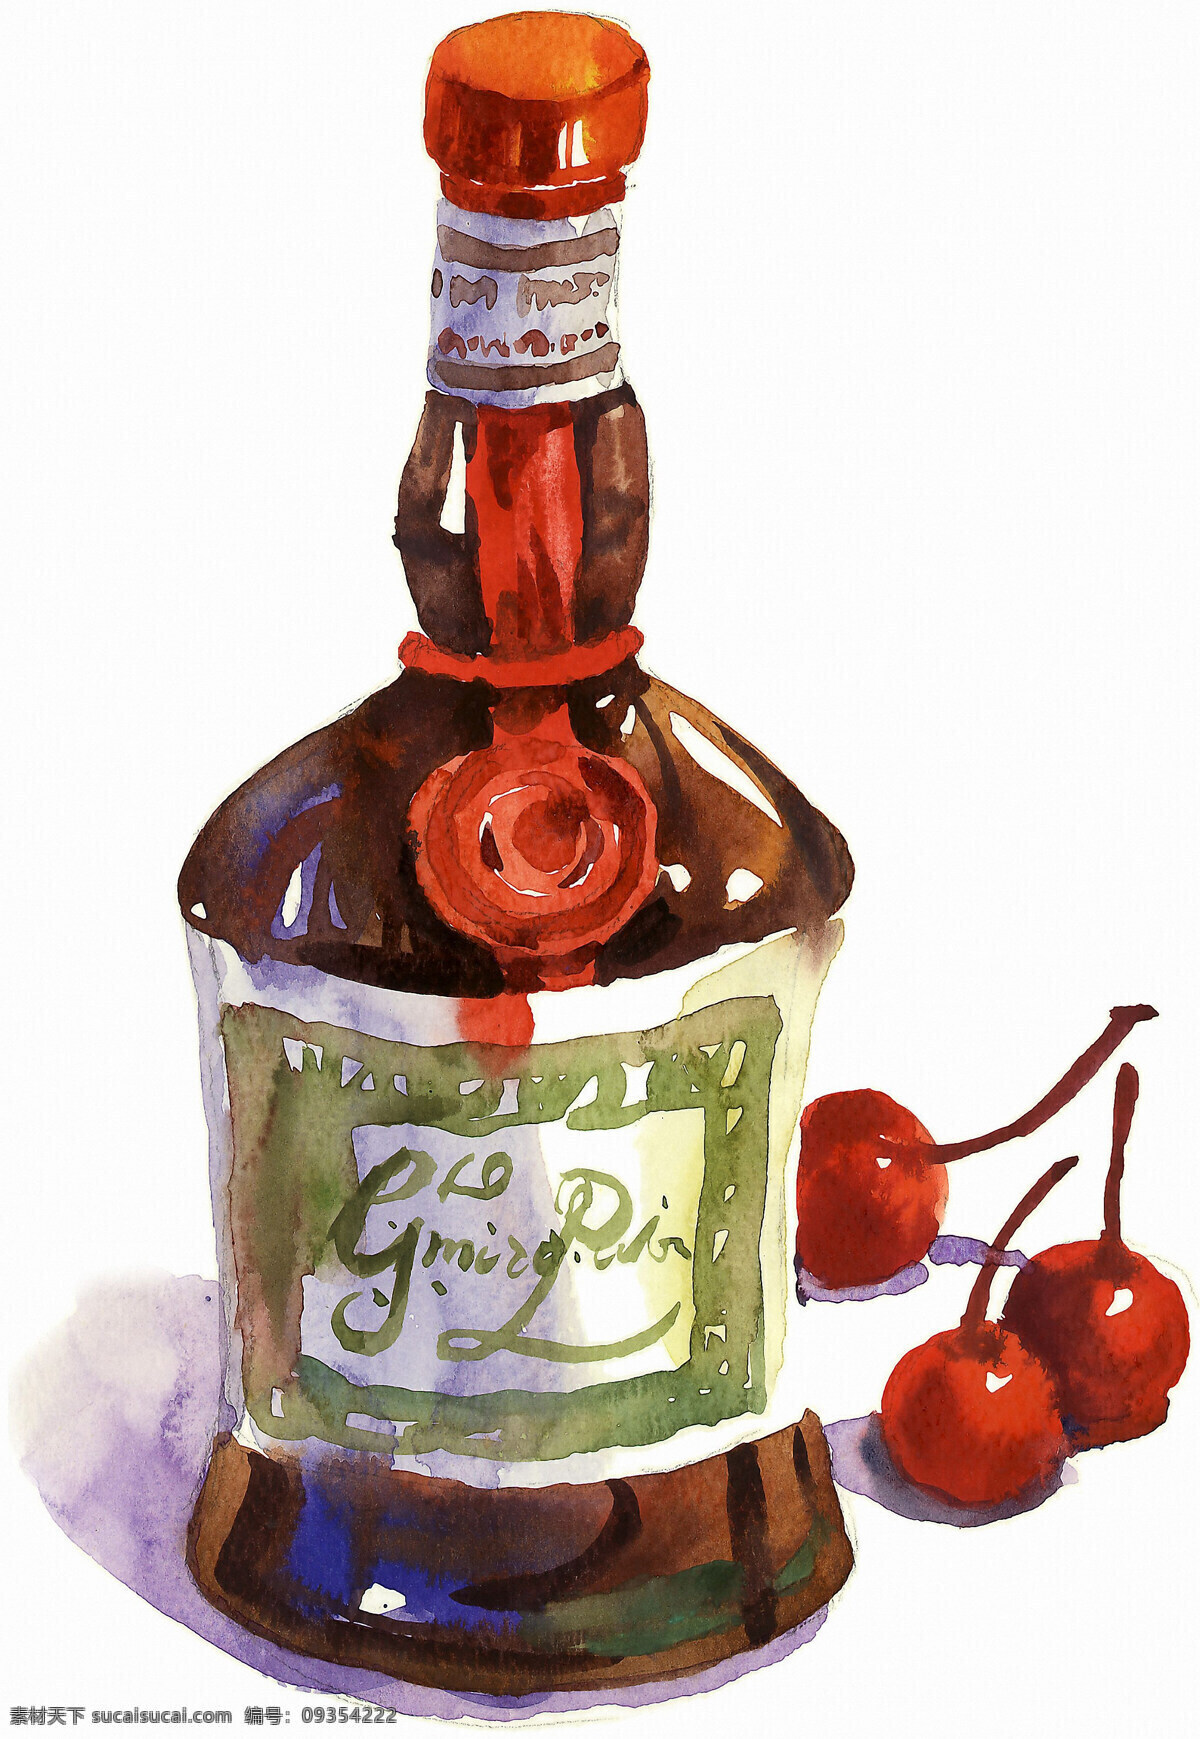 红酒 绘画 绘画书法 酒瓶 立体 瓶子 容器 瓶子设计素材 瓶子模板下载 水彩 水果 樱桃 文化艺术 psd源文件